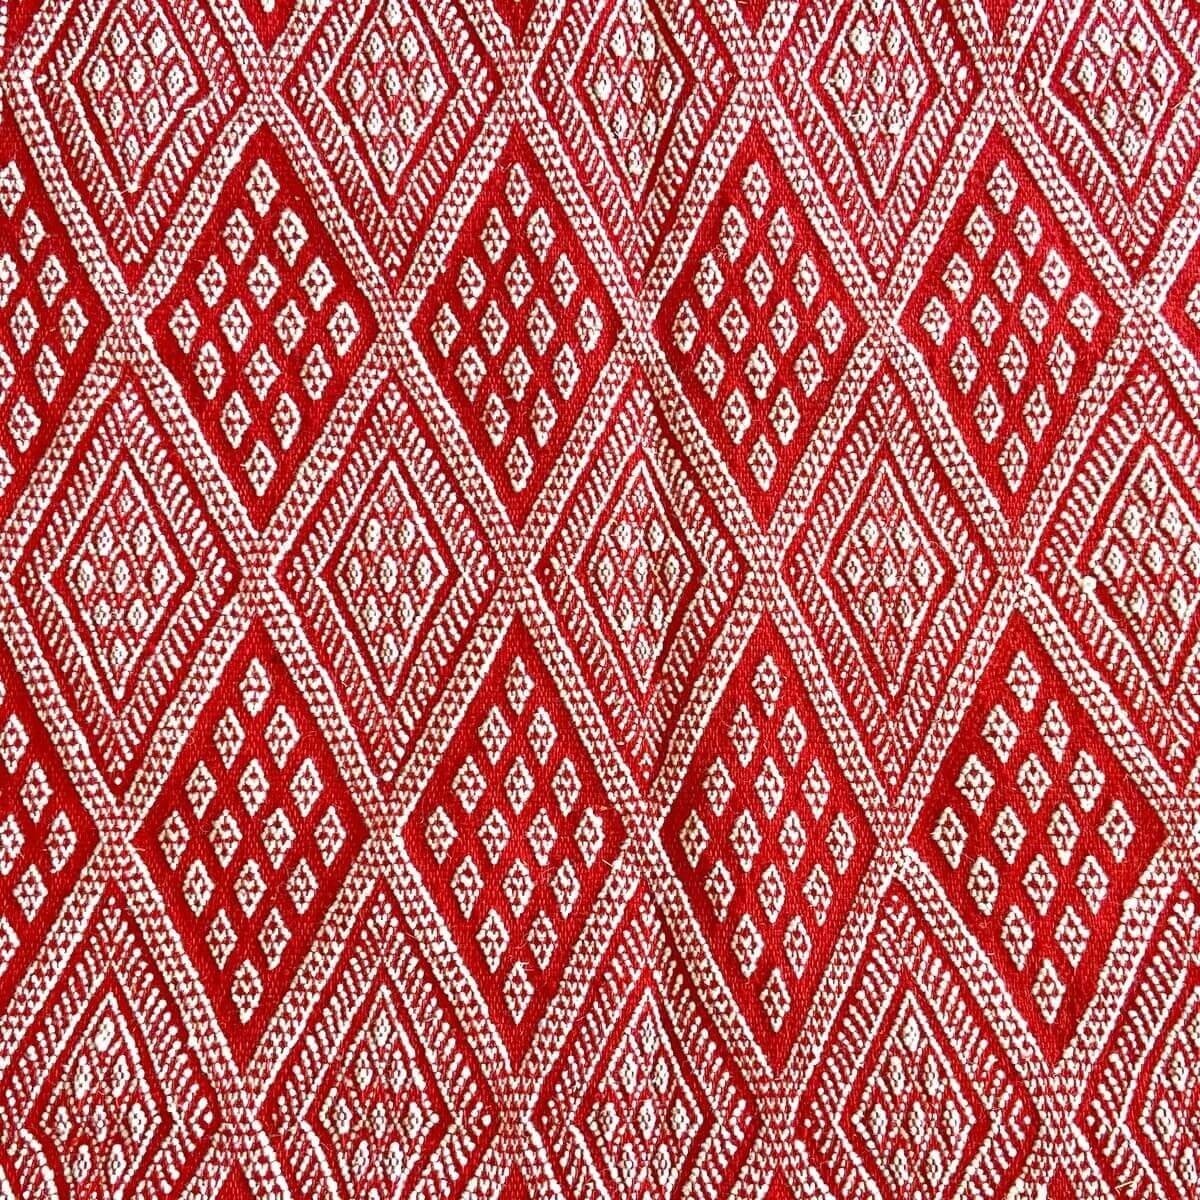 Berber tapijt Tapijt Margoum Daoui 125x190 Rood (Handgeweven, Wol, Tunesië) Tunesisch Margoum Tapijt uit de stad Kairouan. Recht